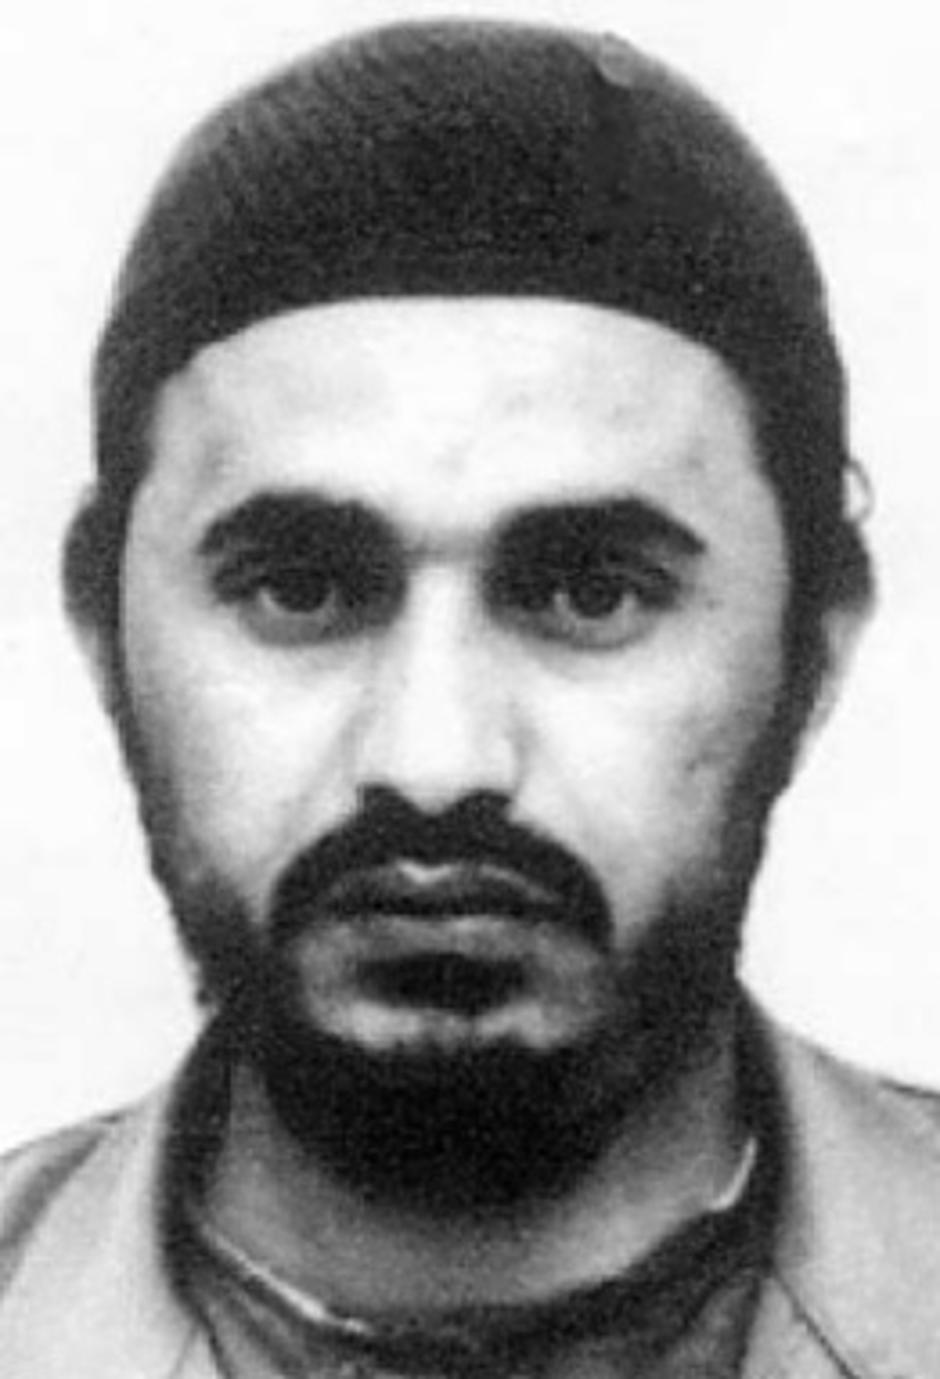 Abu Musab al-Zarqawi | Author: Wikipedia